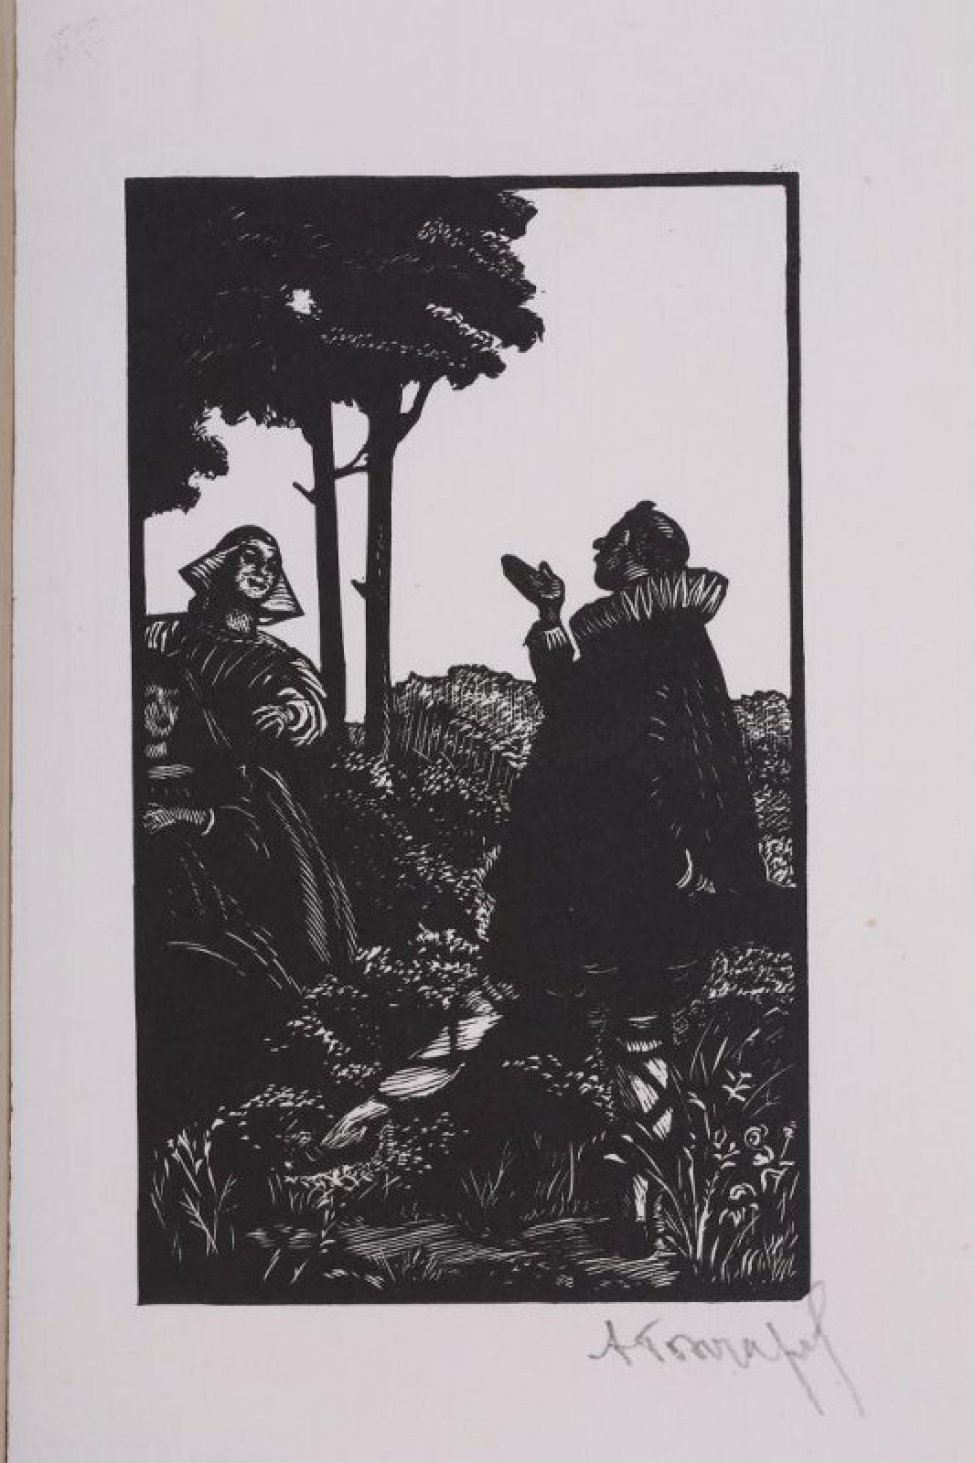 На первом плане справа дана фигура мужчины в одежде с высоким гофрированным воротником, он стоит на одной ноге, другая поднята, носок вынянут. Слева две женские фигуры в длинных платьях, фрагментированное краем гравюры. За ними видны два дерева с пышными кронами.